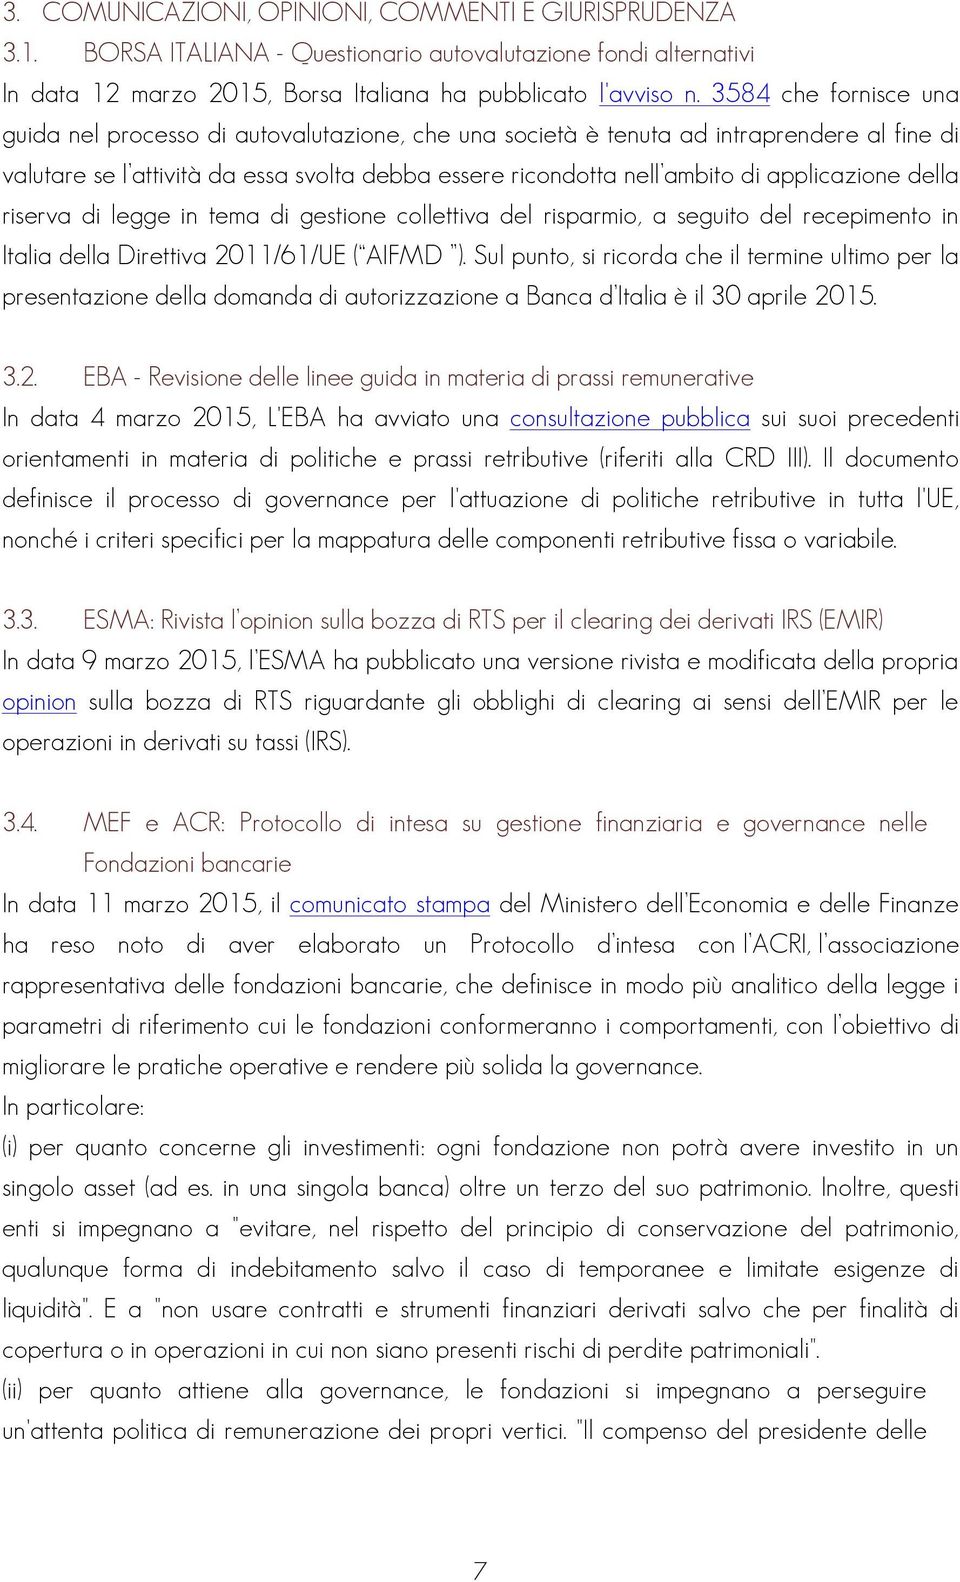 applicazione della riserva di legge in tema di gestione collettiva del risparmio, a seguito del recepimento in Italia della Direttiva 2011/61/UE ( AIFMD ).